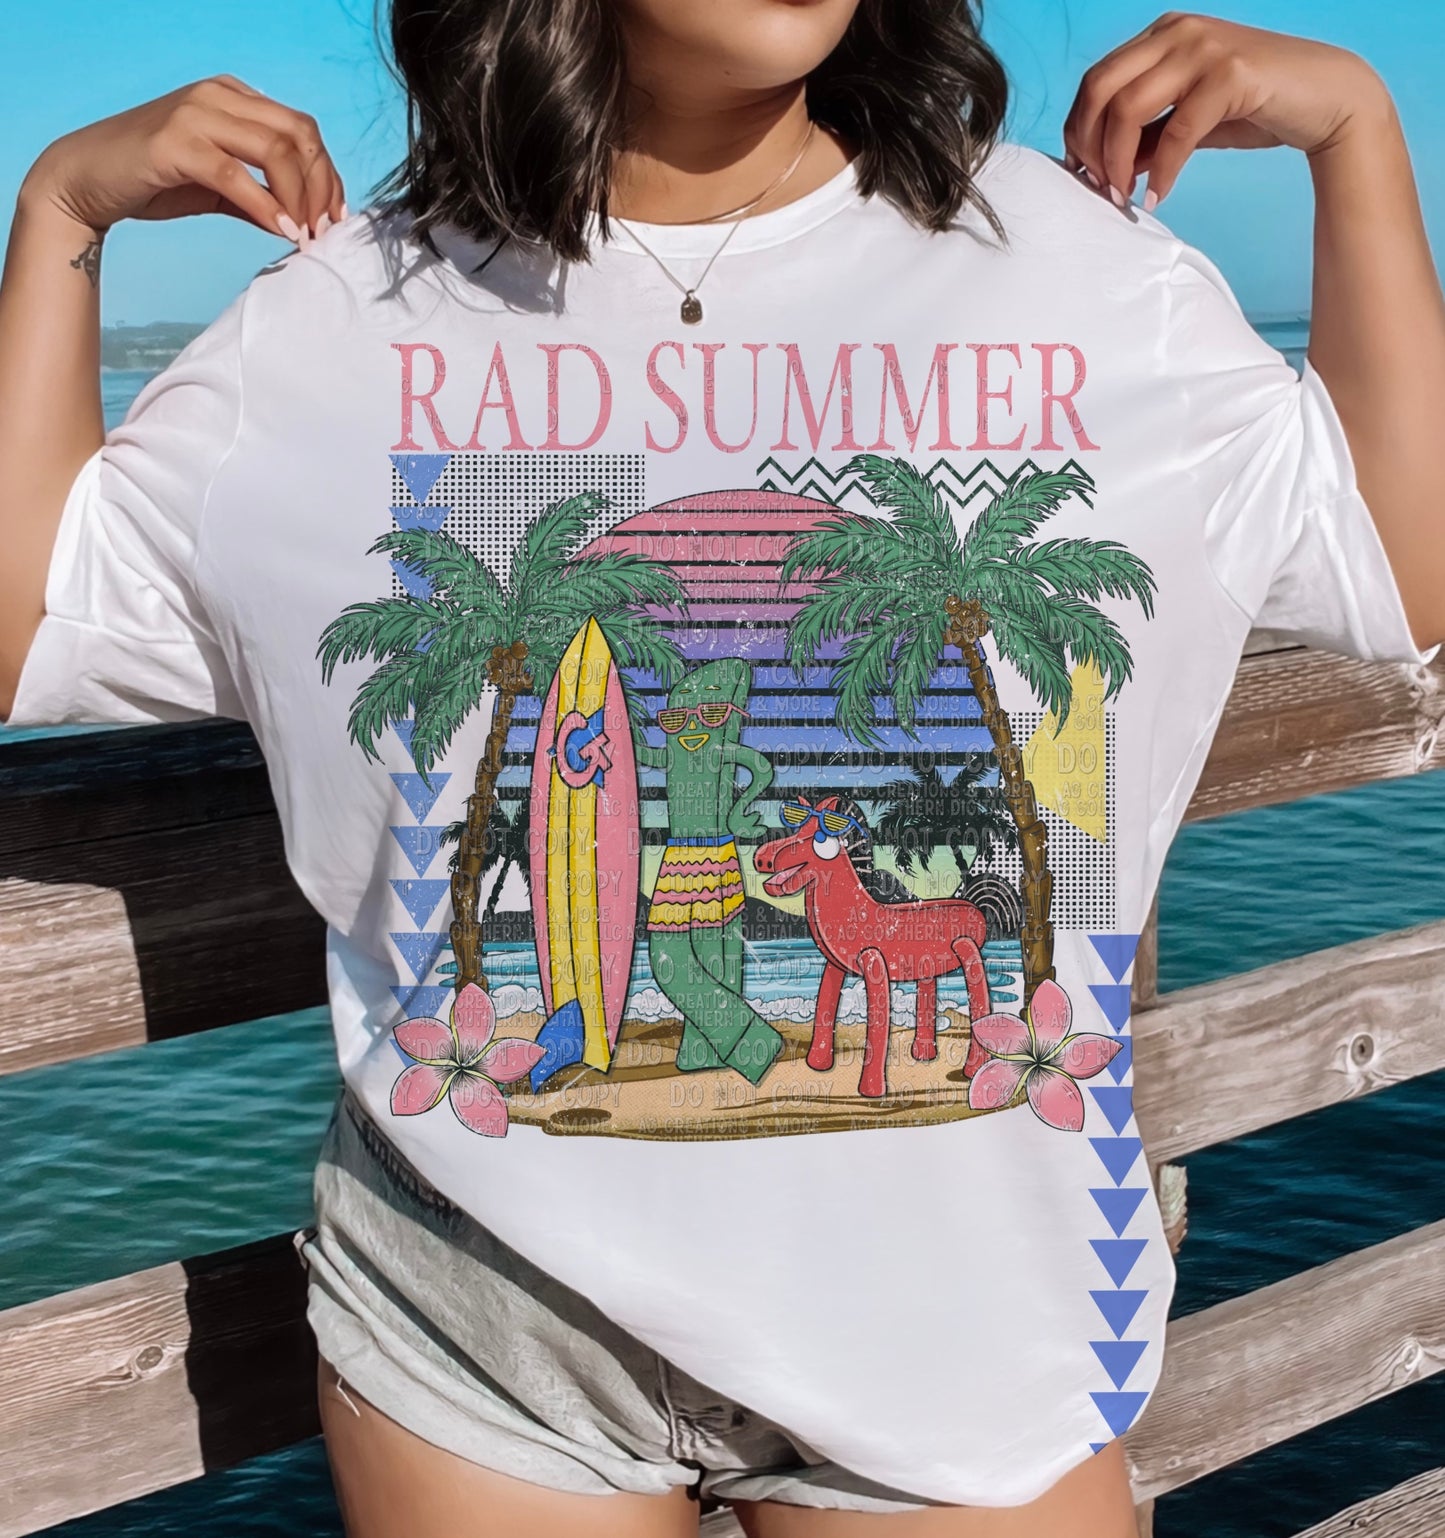 Rad Summer (AG): *DTF* Transfer